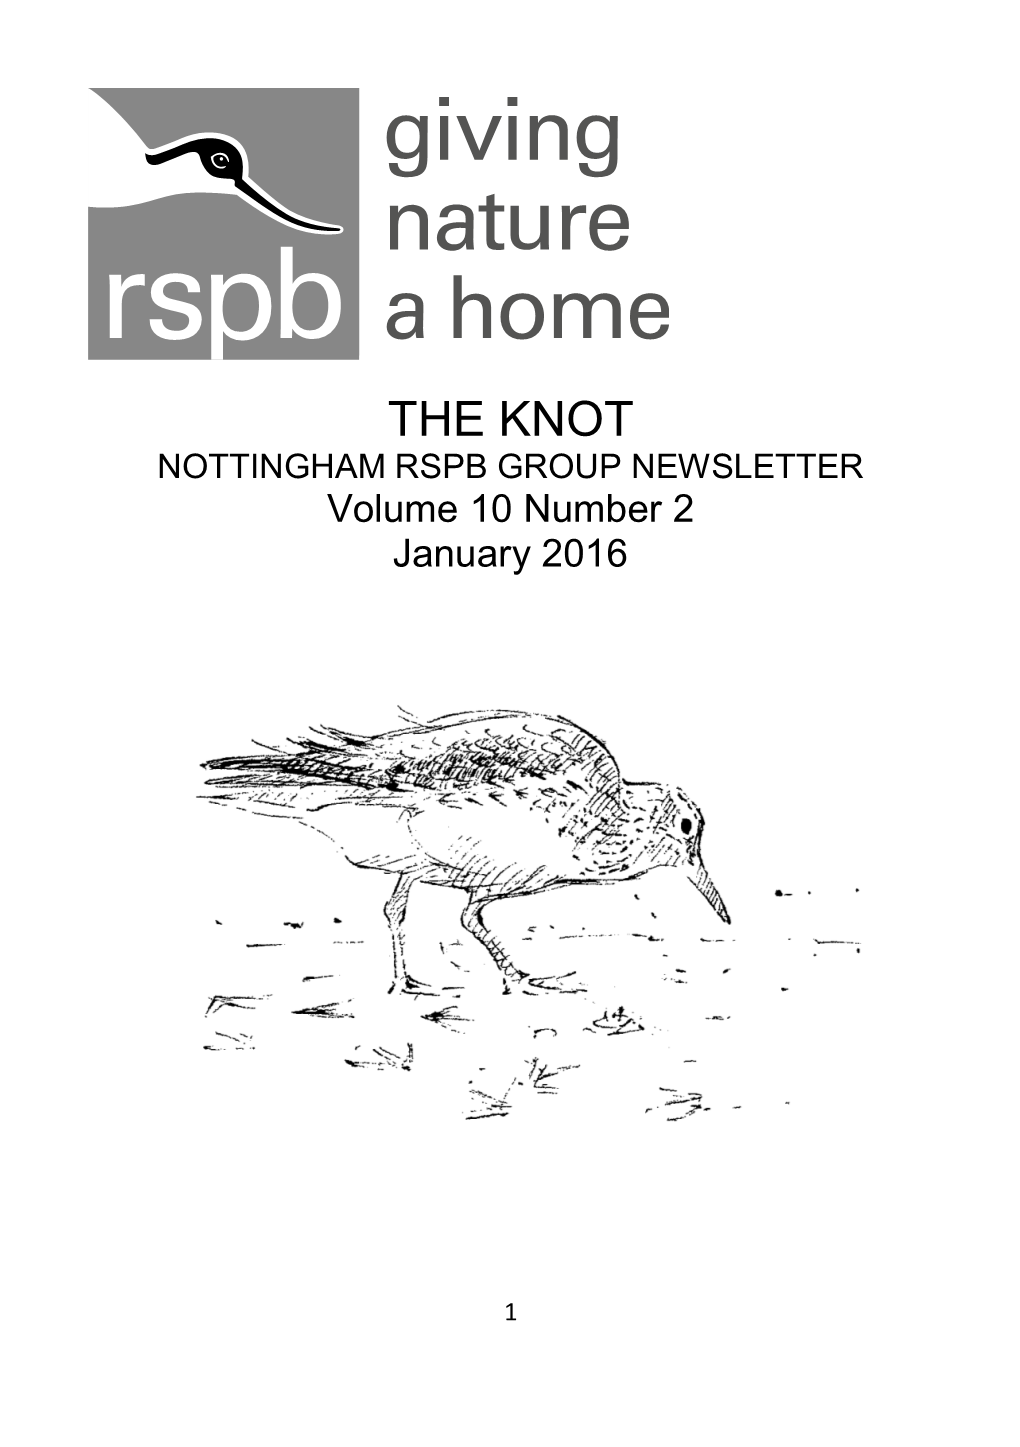 THE KNOT NOTTINGHAM RSPB GROUP NEWSLETTER Volume 10 Number 2 January 2016